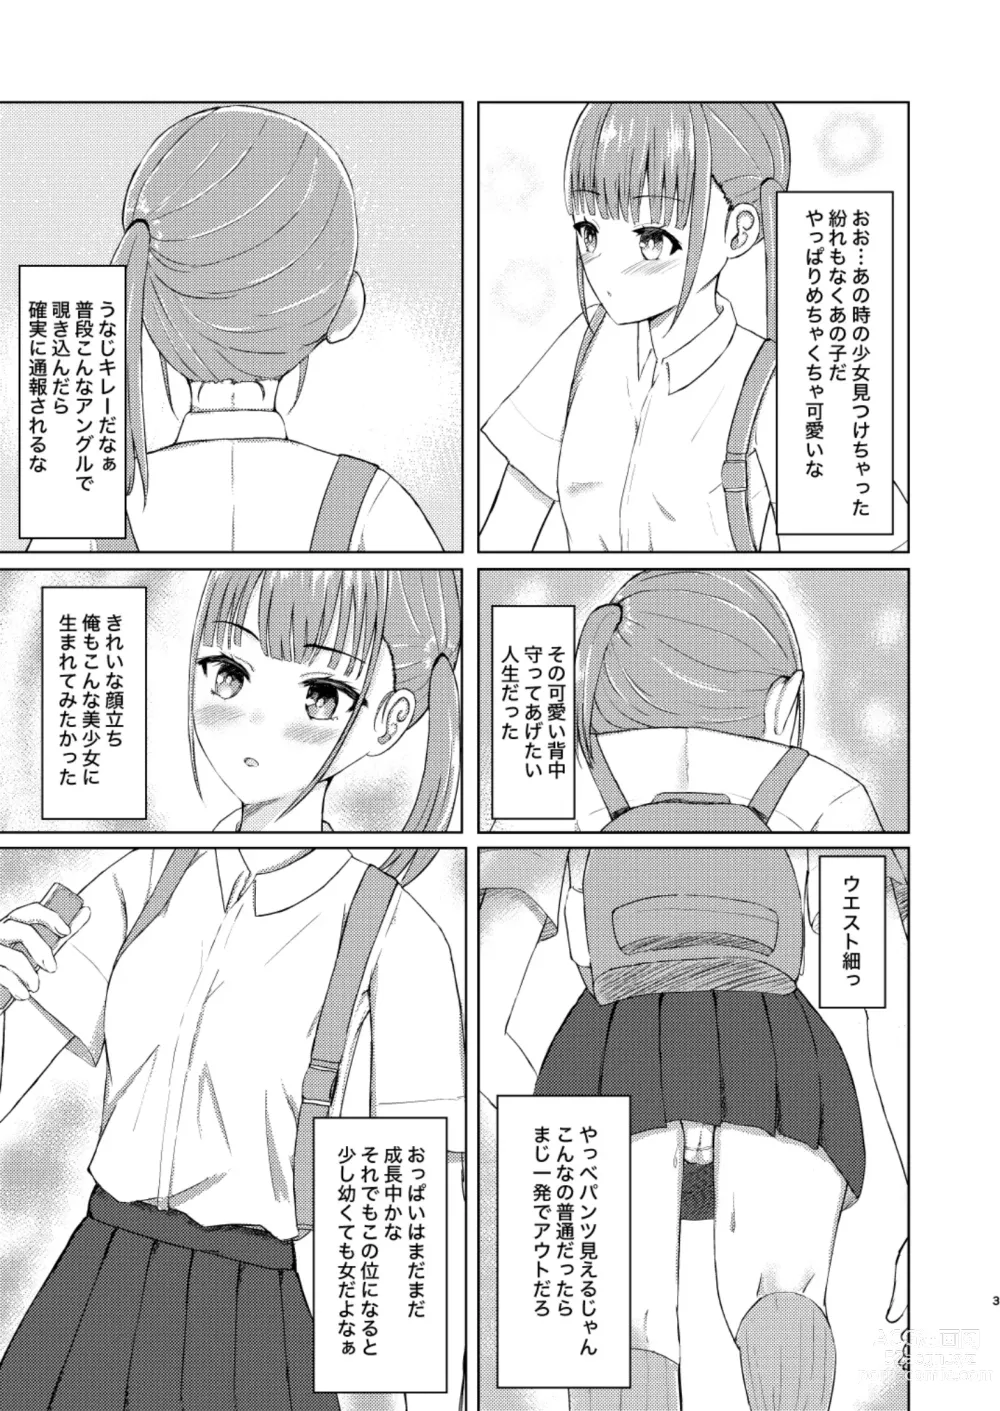 Page 3 of doujinshi Kawaii Ko Mitsuketa node Naka ni Haitte Mita!